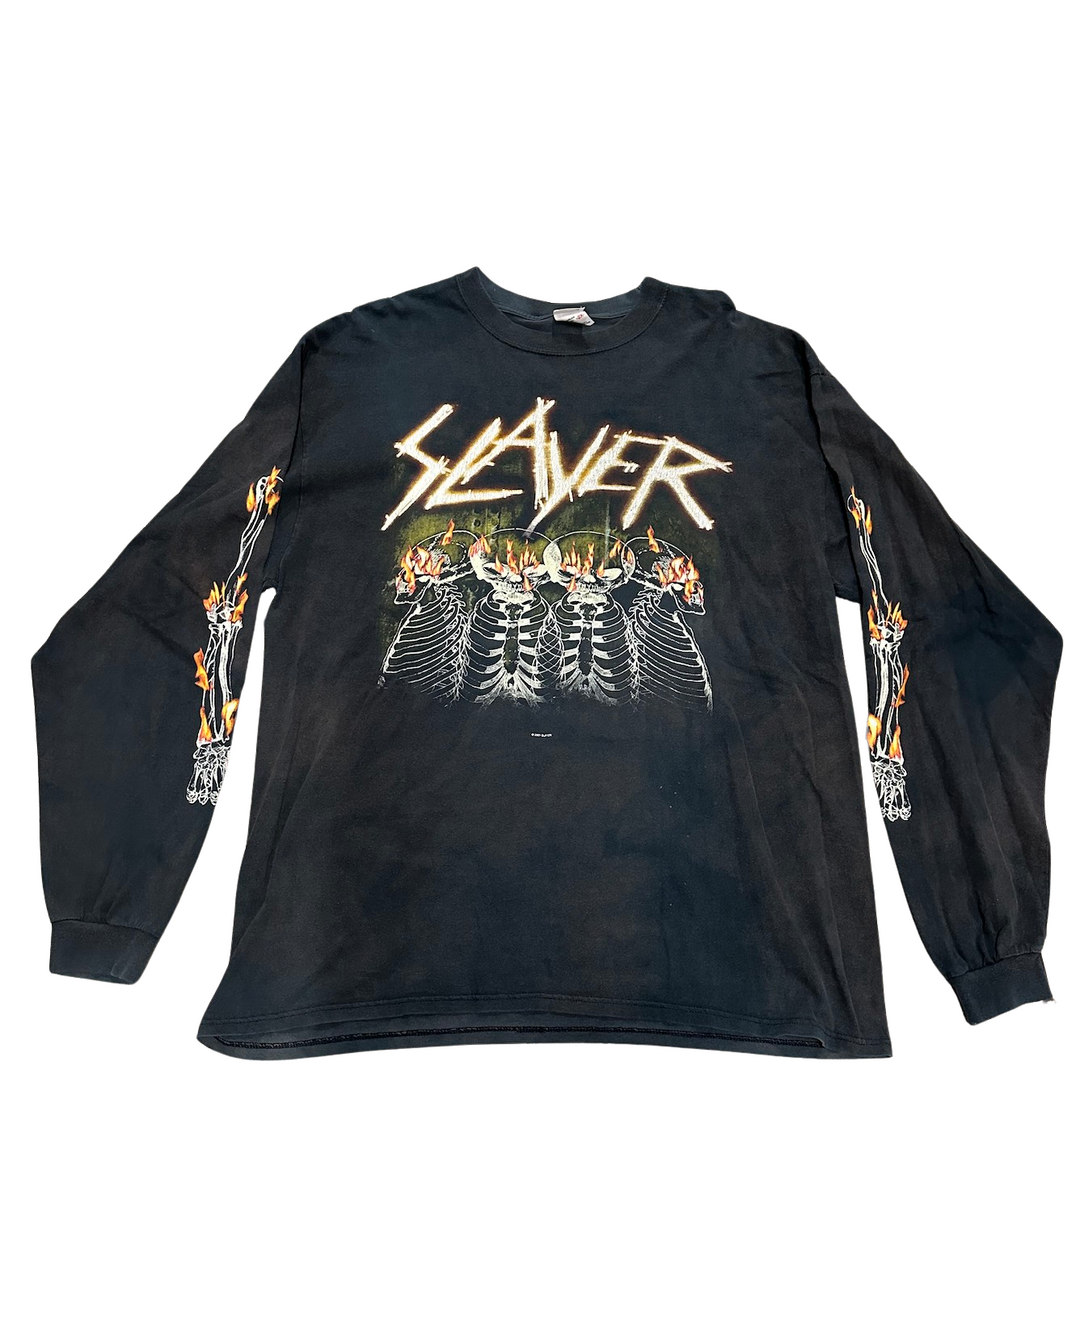 Slayer 'Flame Skeleton' Vintage 2001 Long Sleeve